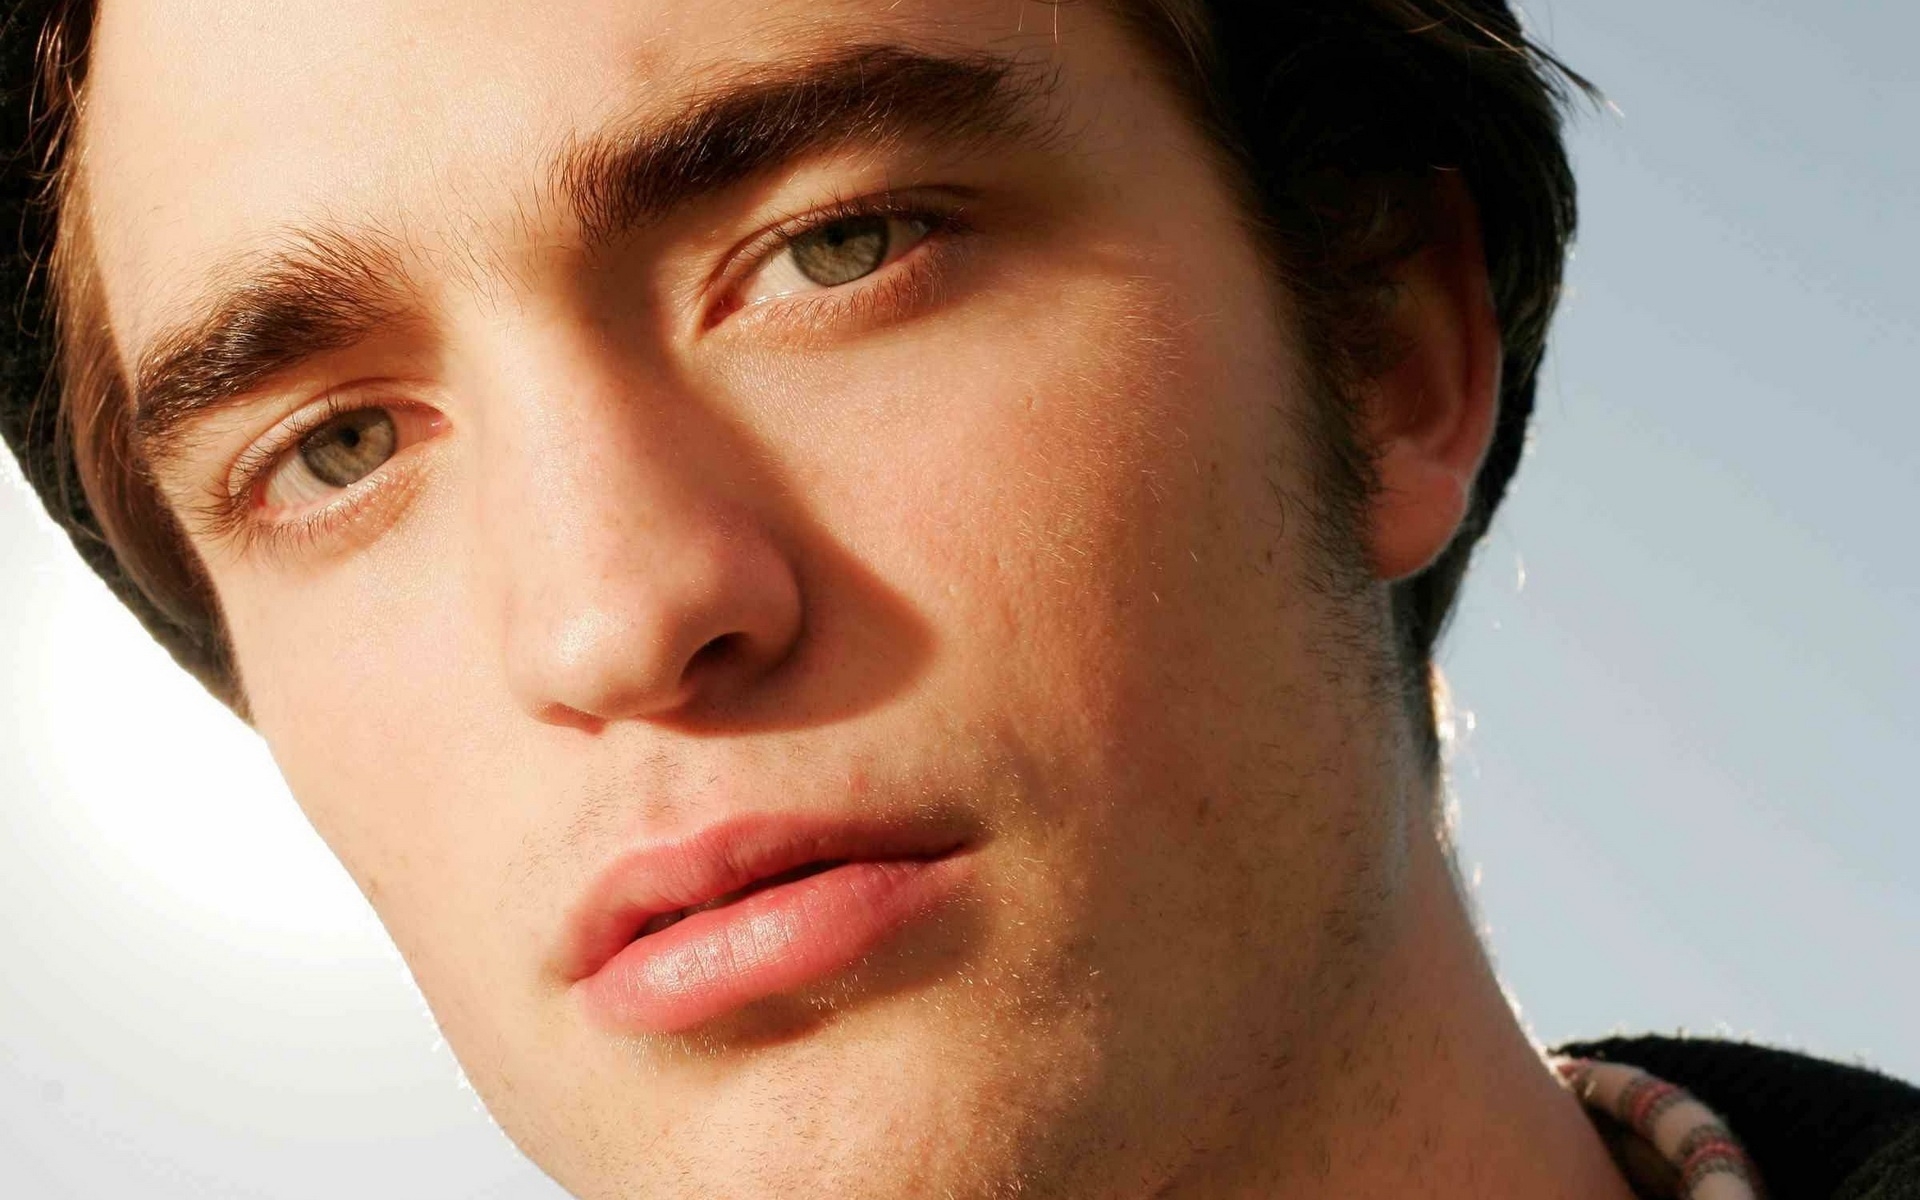 Robert Pattinson Close-up for 1920 x 1200 widescreen resolution